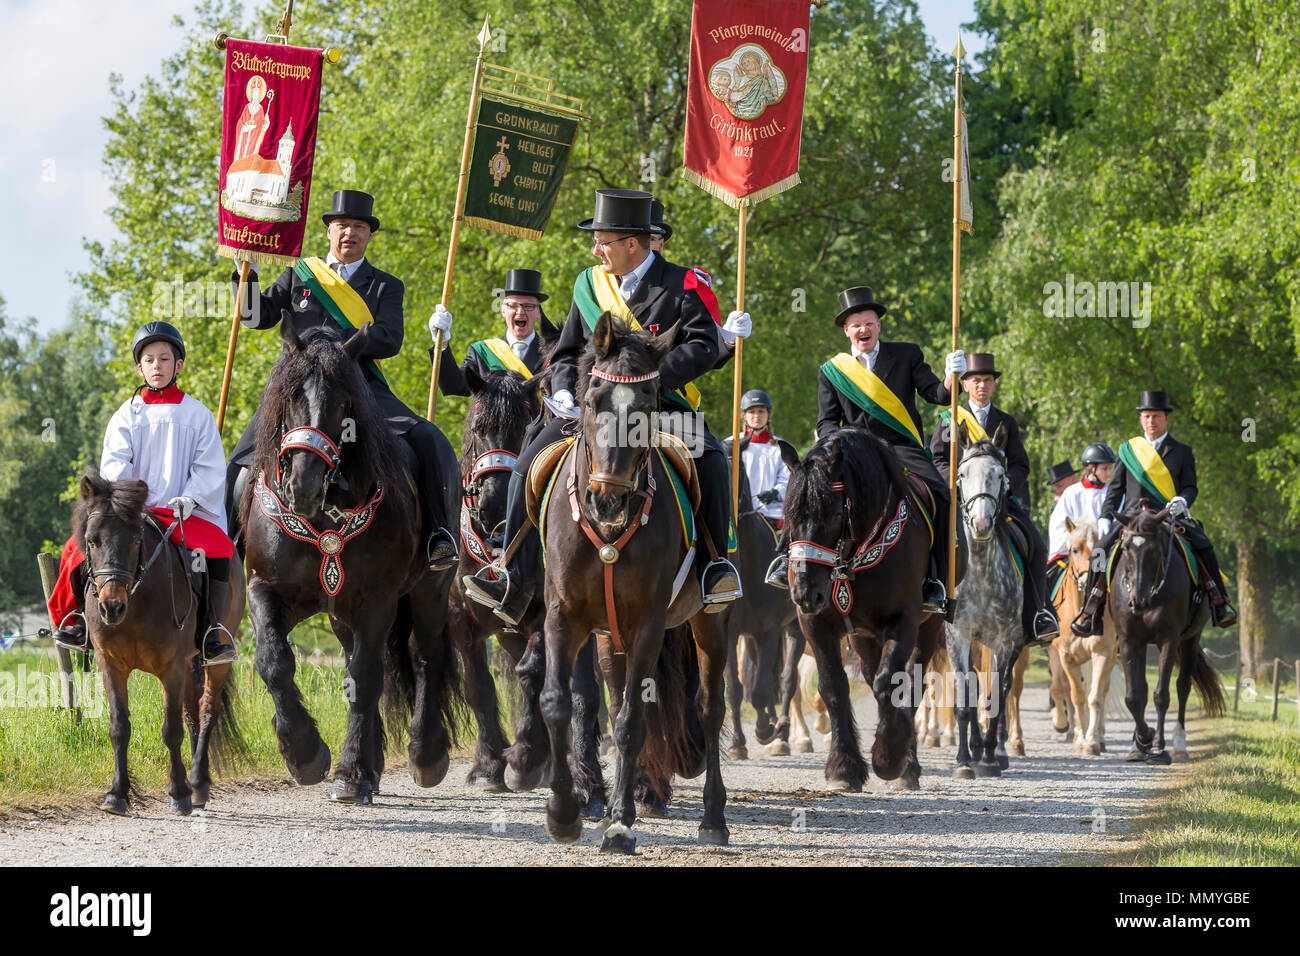 Blutritt, Weingarten, Germania, con 2500 cavalli, in onore di una reliquia del sangue. Il pellegrinaggio è il più grande corteo equestre in Europa. Foto Stock